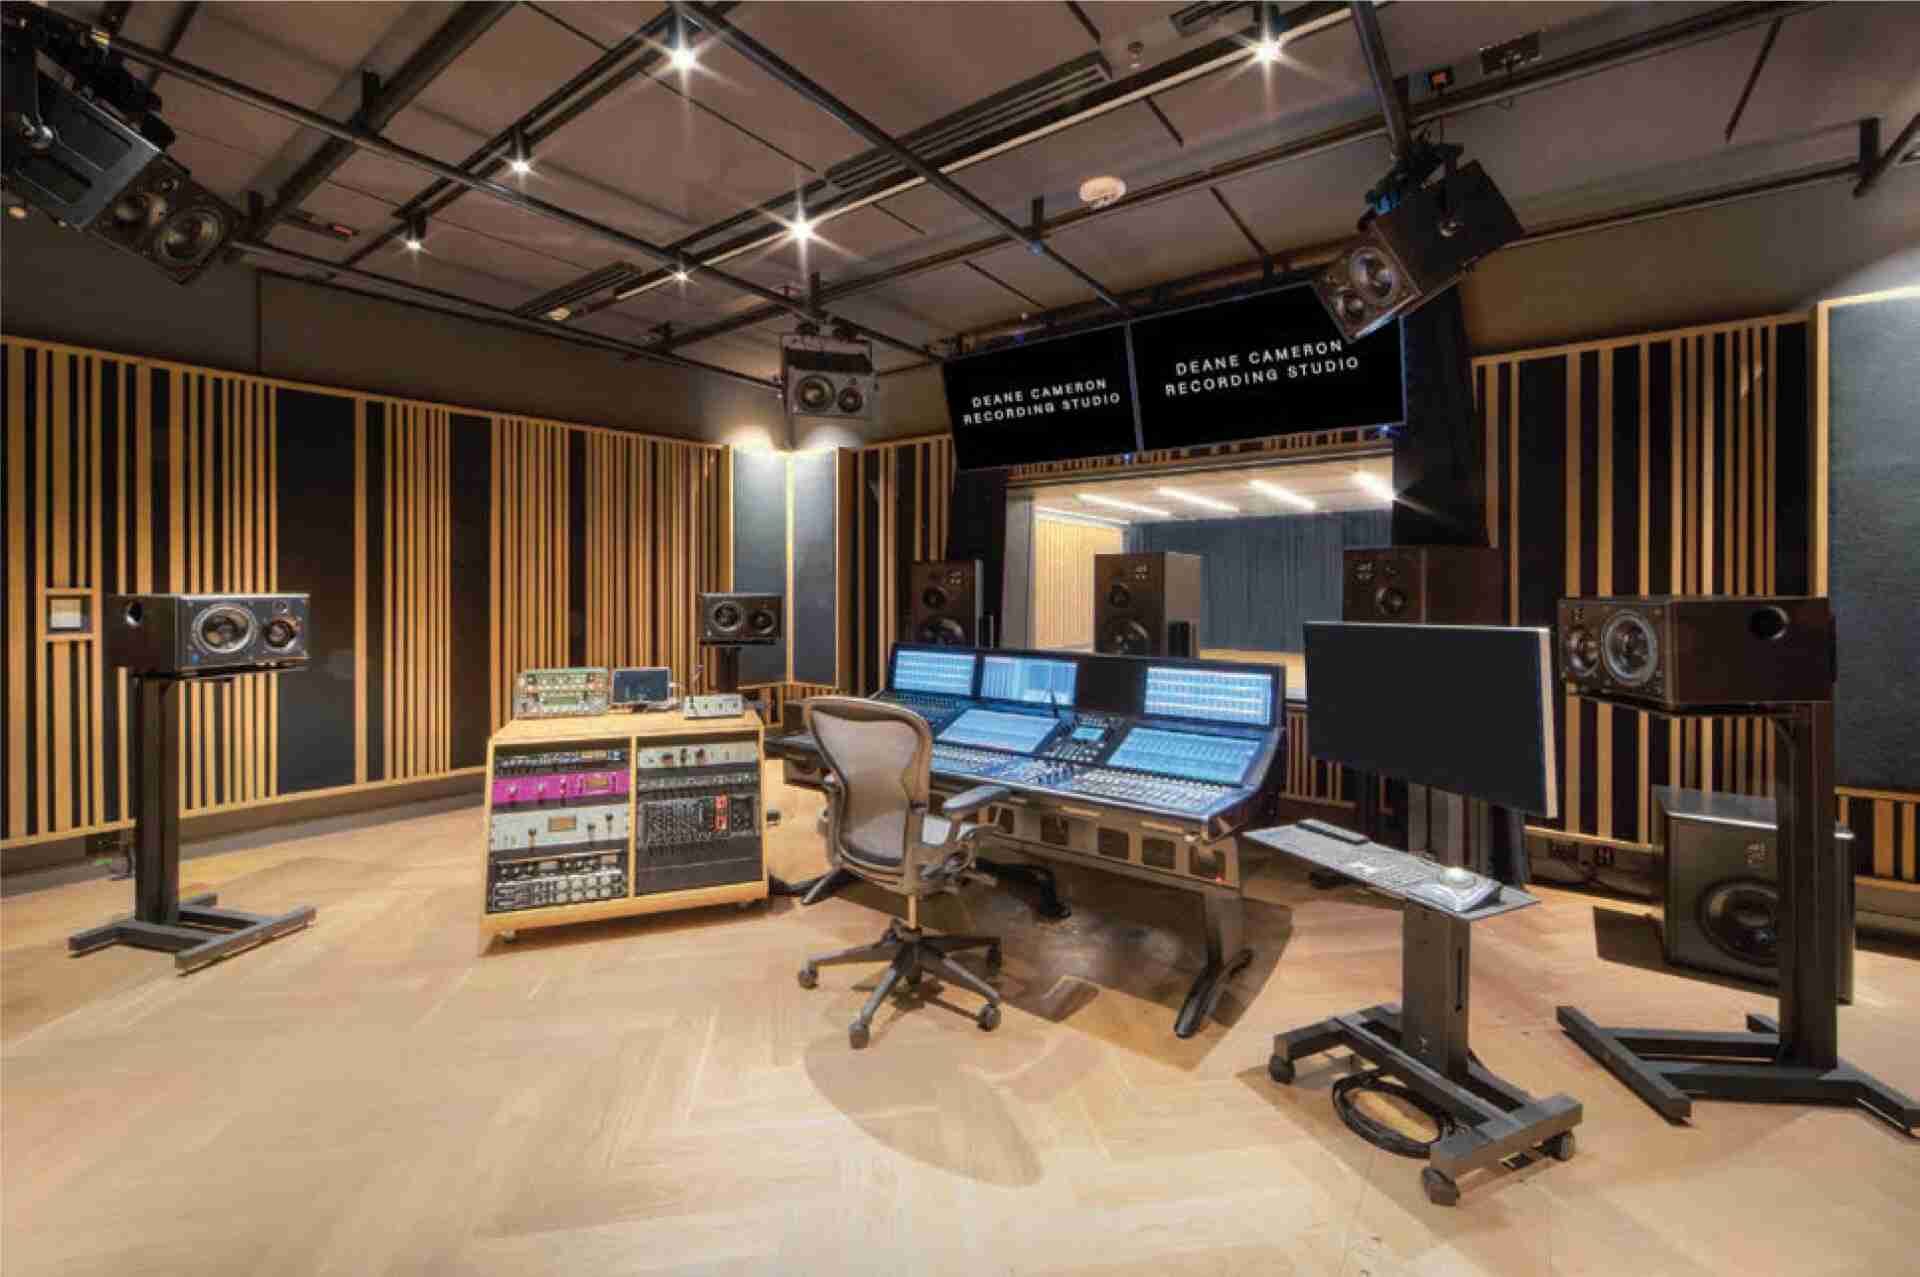 The Music Company - deane-cameron-recording-studio-control-room-interior